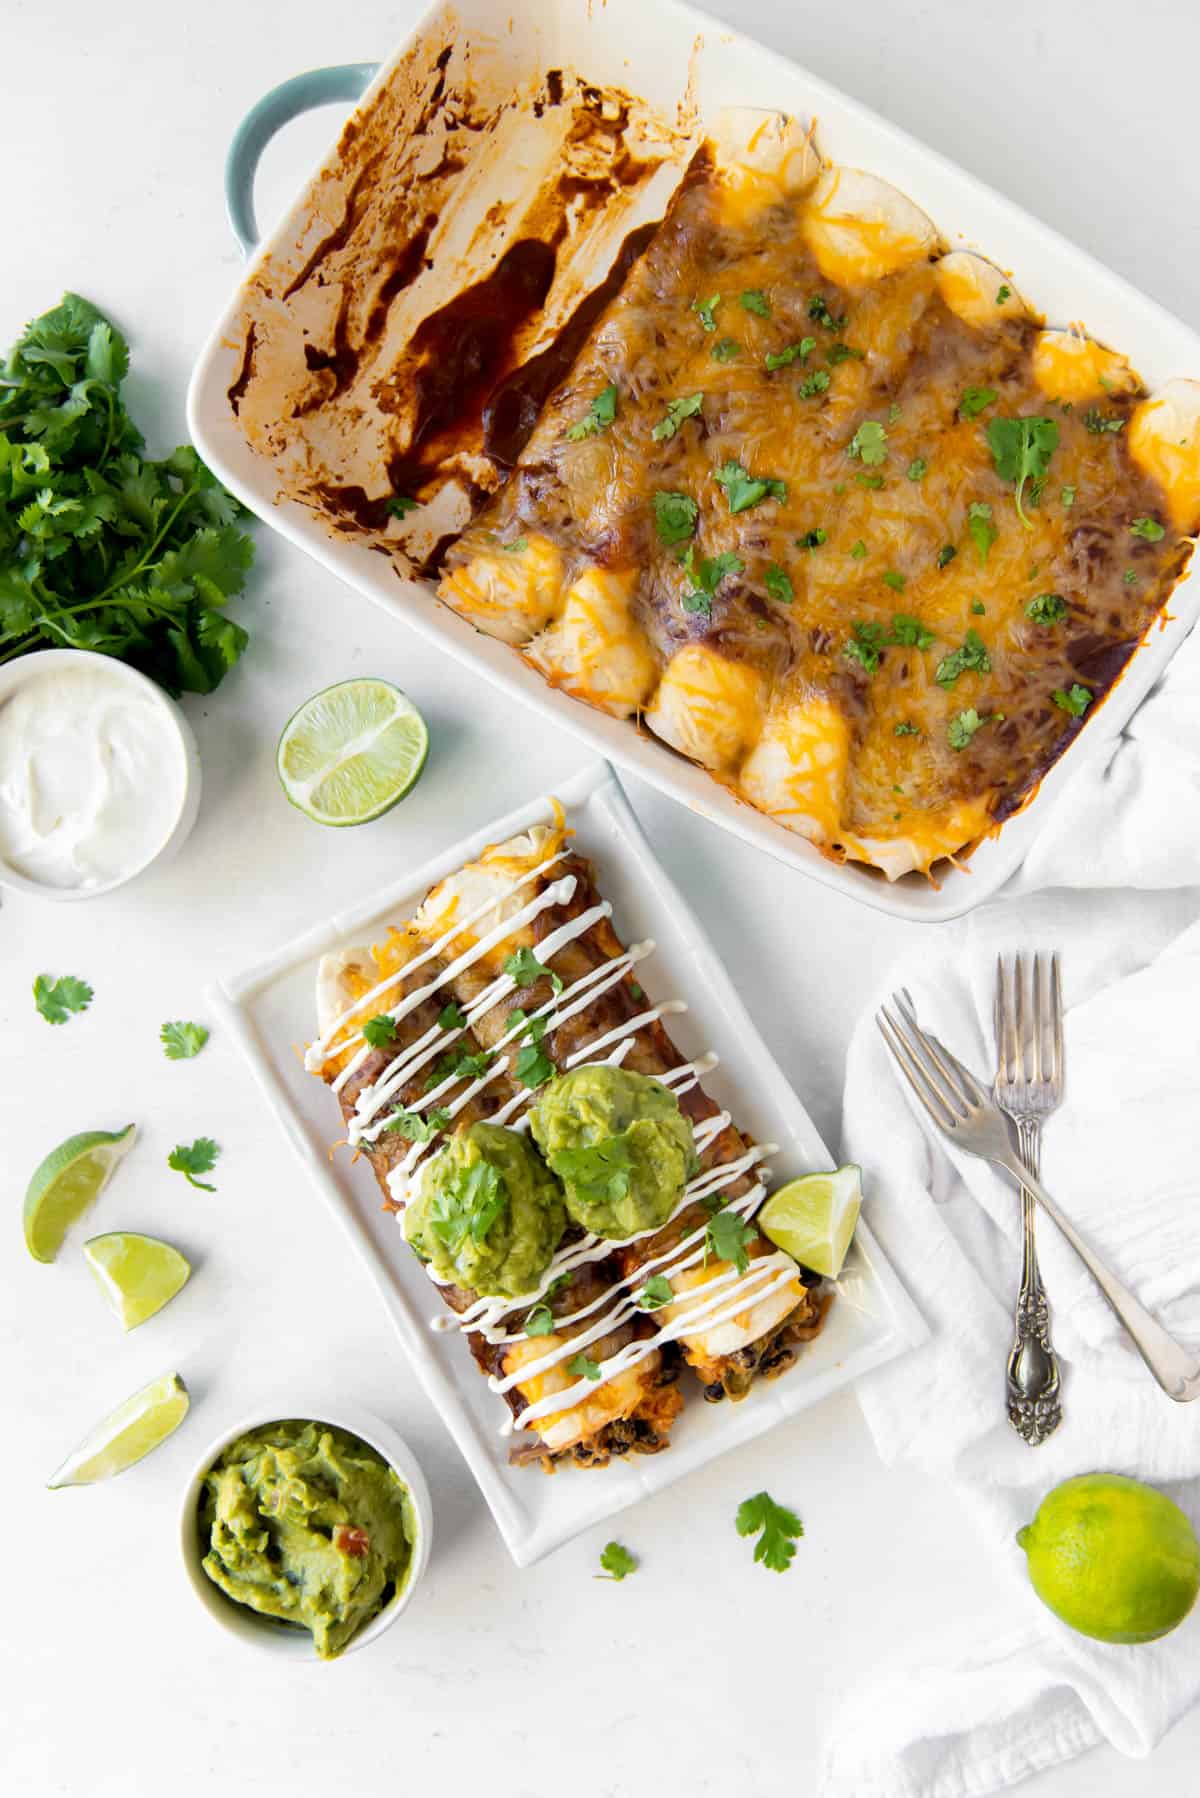 Vue aérienne d'une poêle d'enchiladas aux légumes et d'une assiette contenant deux enchiladas aux légumes, garnies de guacamole et de crème aigre.